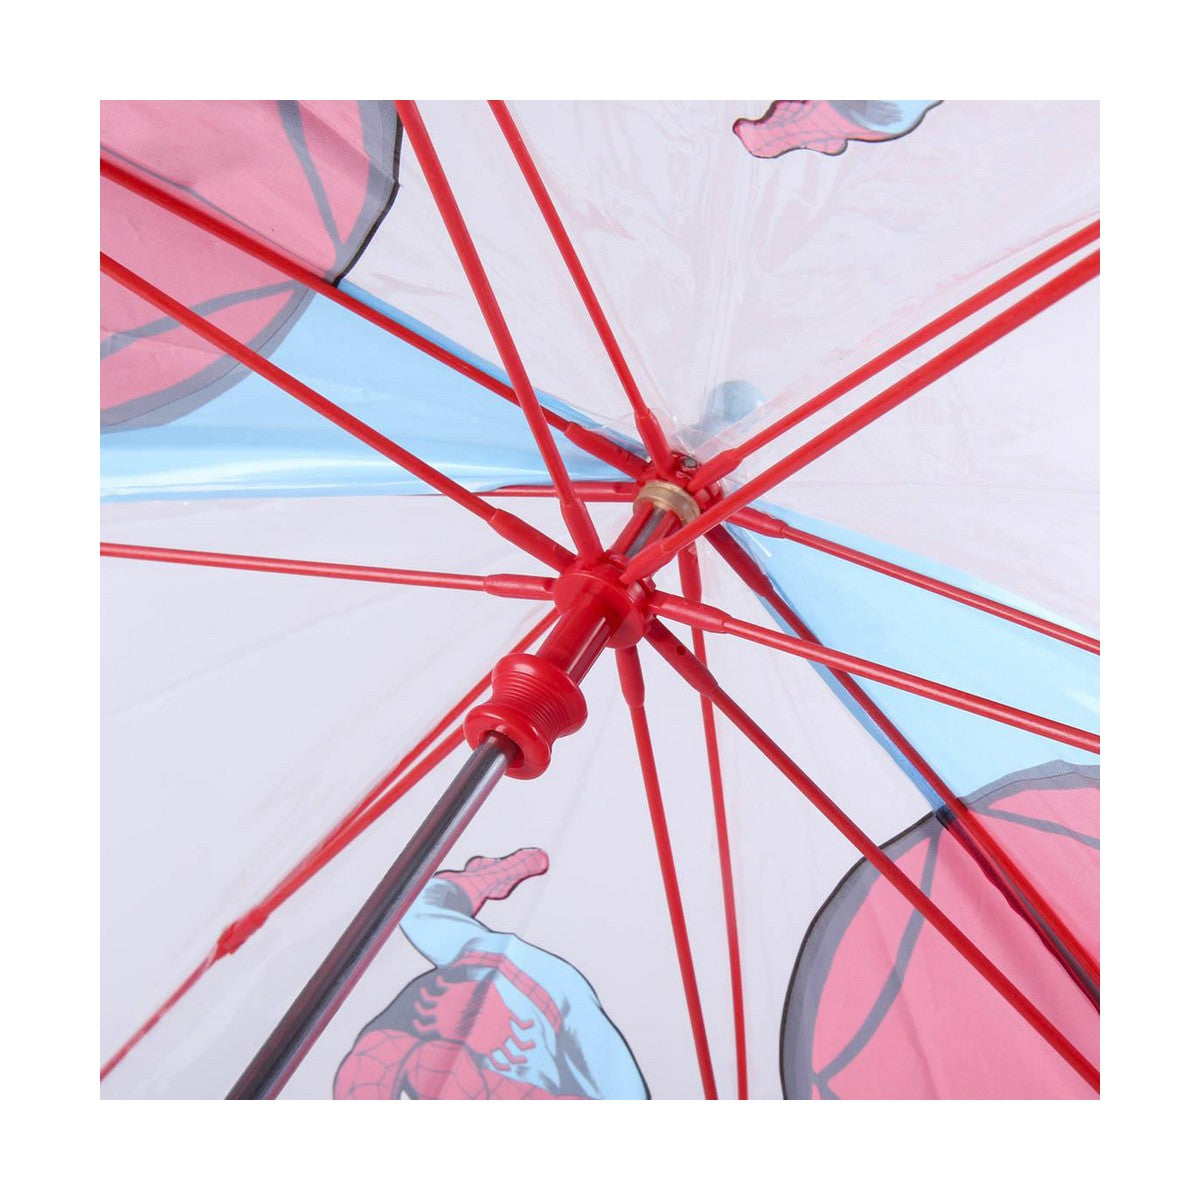 Paraplu Spider-Man Rood PoE 42 cm (Ø 66 cm)